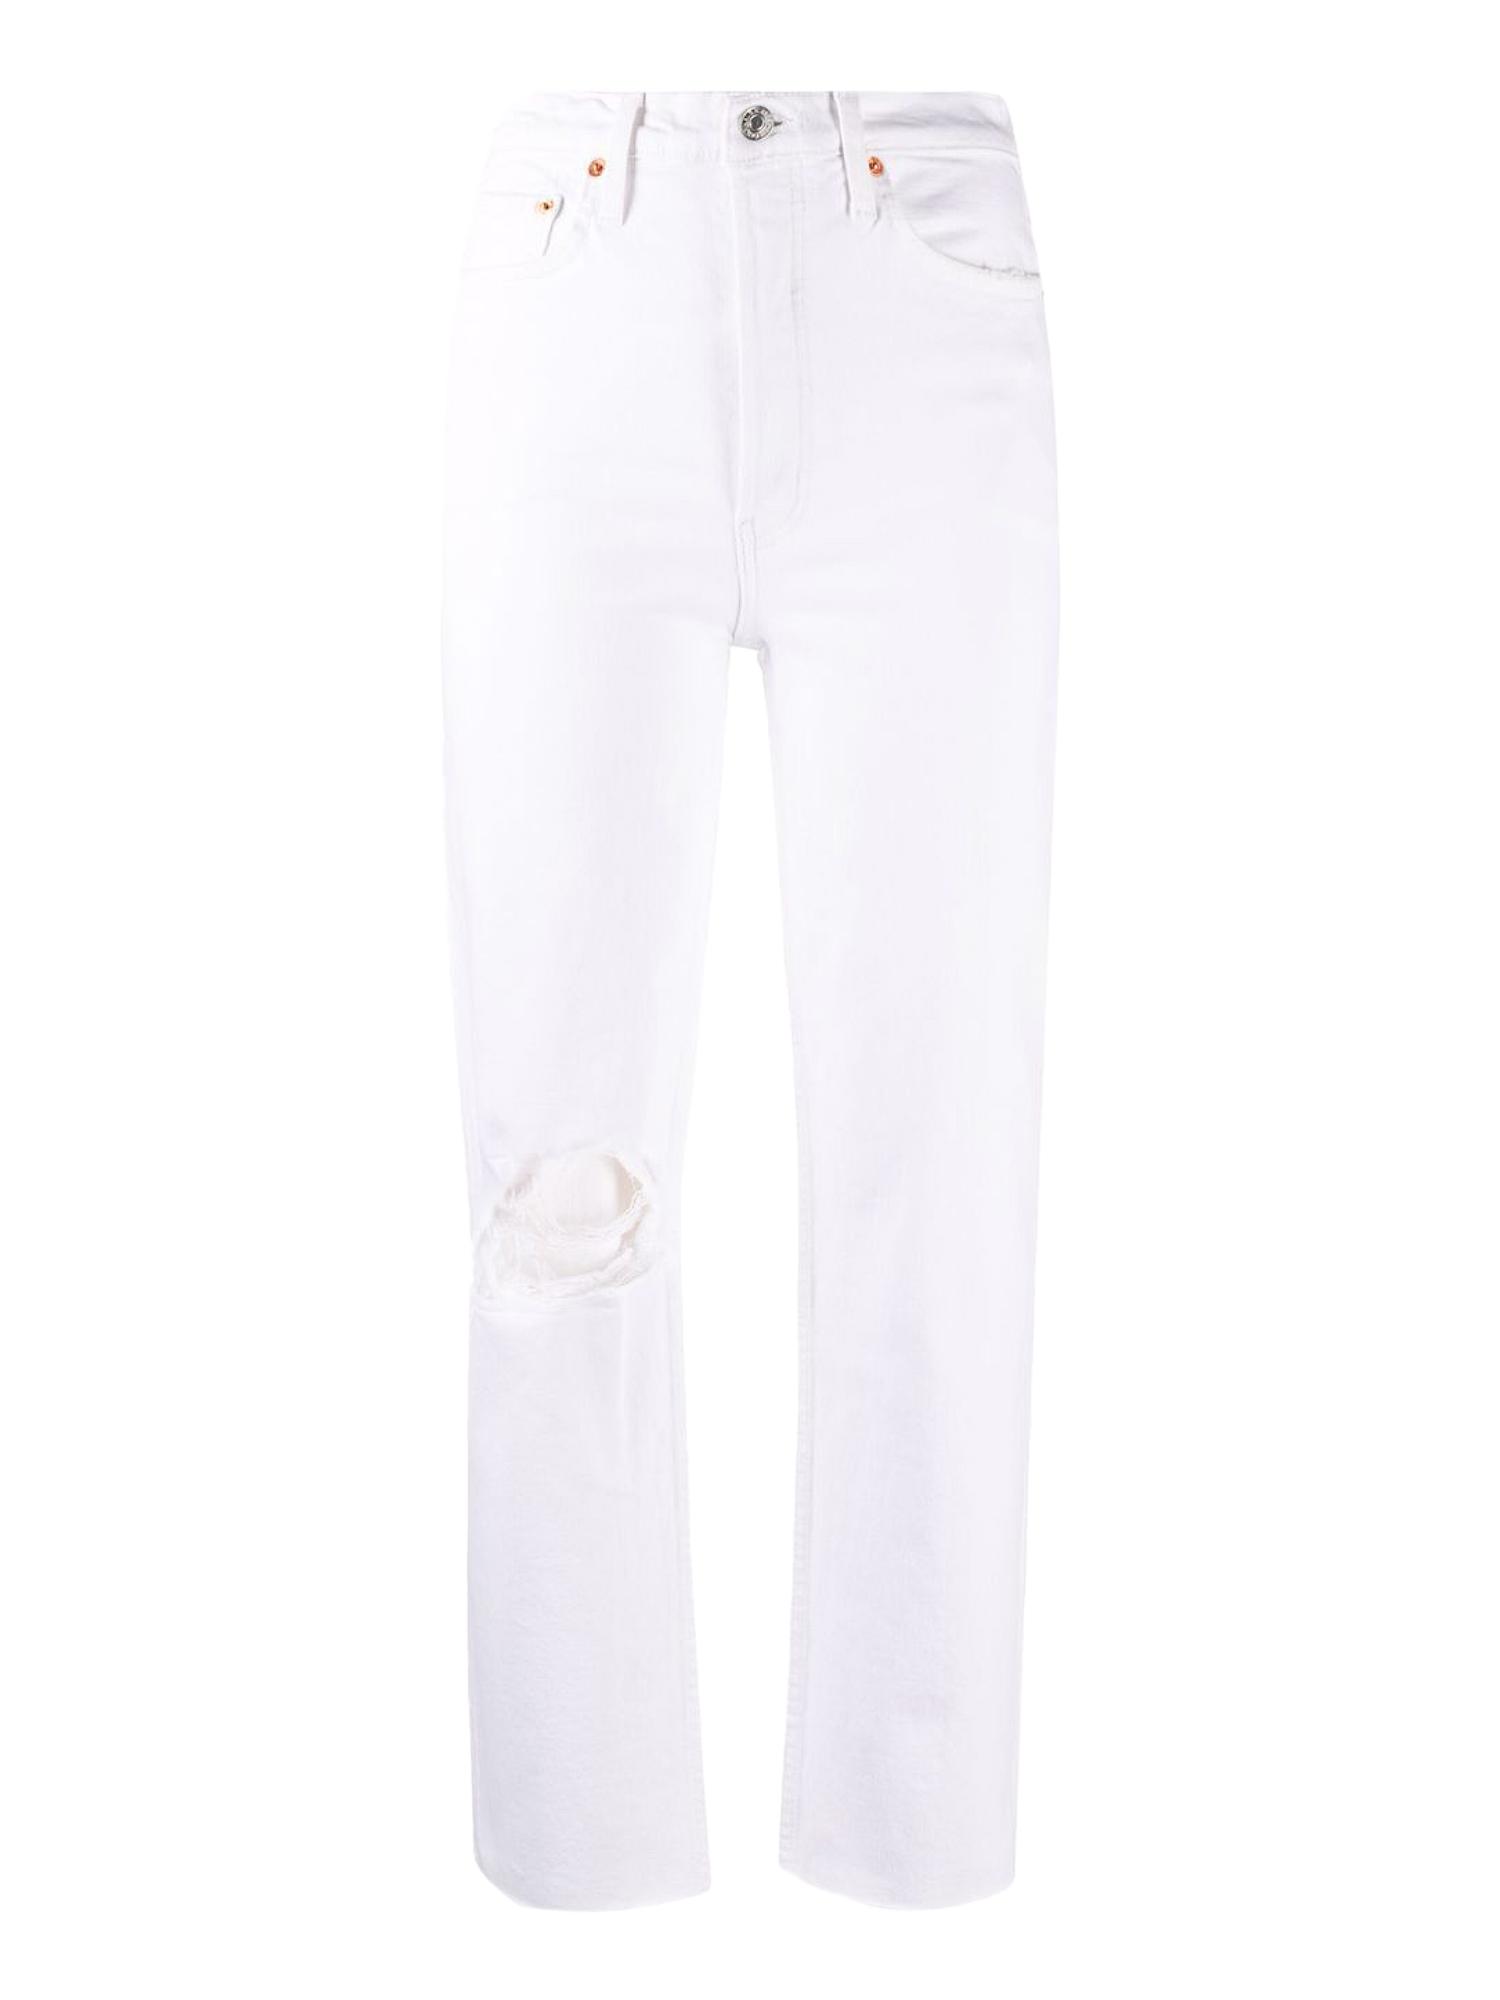 JEANS SLIM 70SRE/DONE in Denim di colore Marrone Donna Jeans da Jeans RE/DONE 